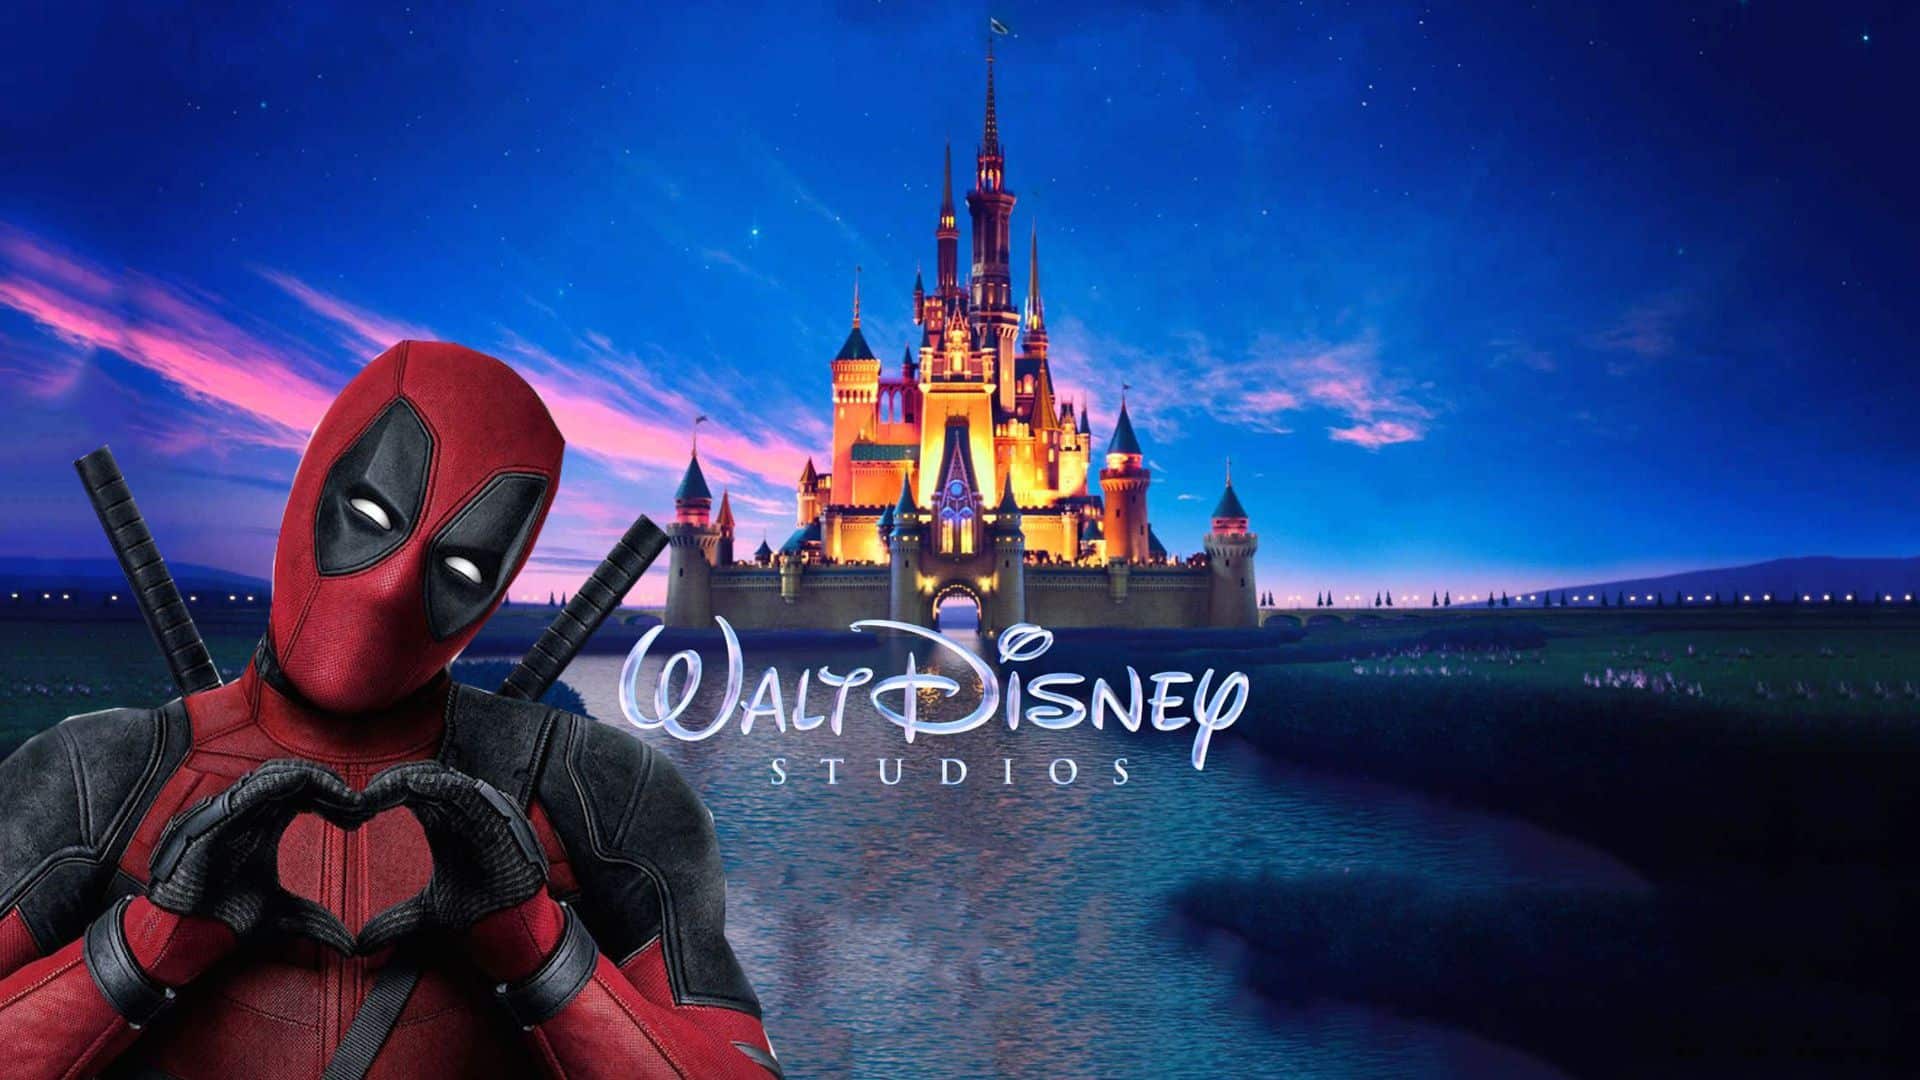 Deadpool prende in giro la Disney in un divertente video parodia